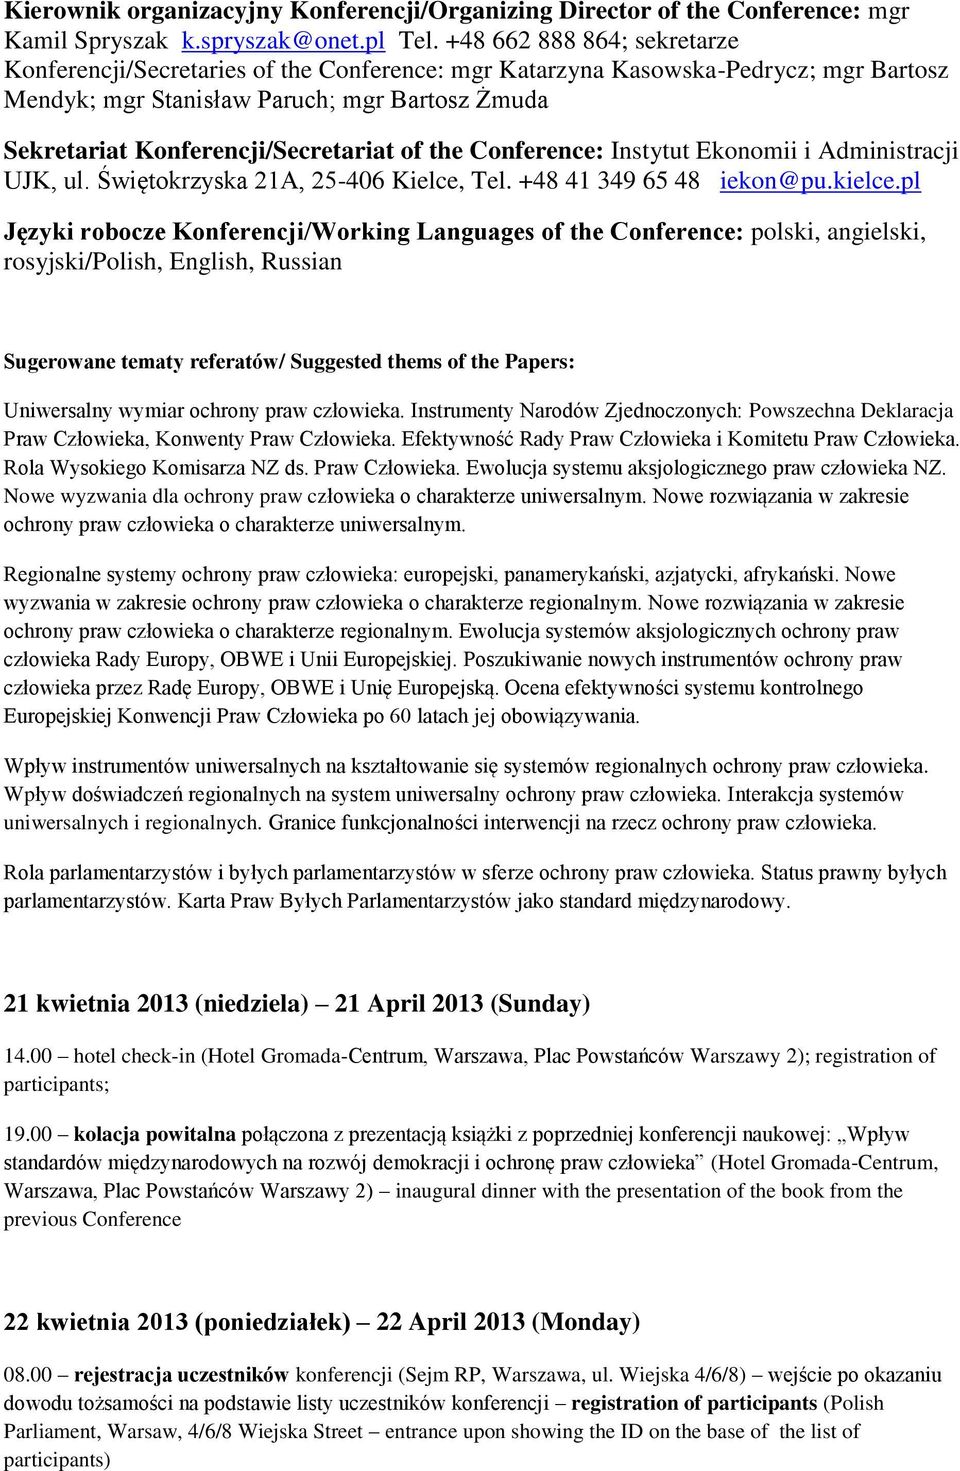 of the Conference: Instytut Ekonomii i Administracji UJK, ul. Świętokrzyska 21A, 25-406 Kielce, Tel. +48 41 349 65 48 iekon@pu.kielce.